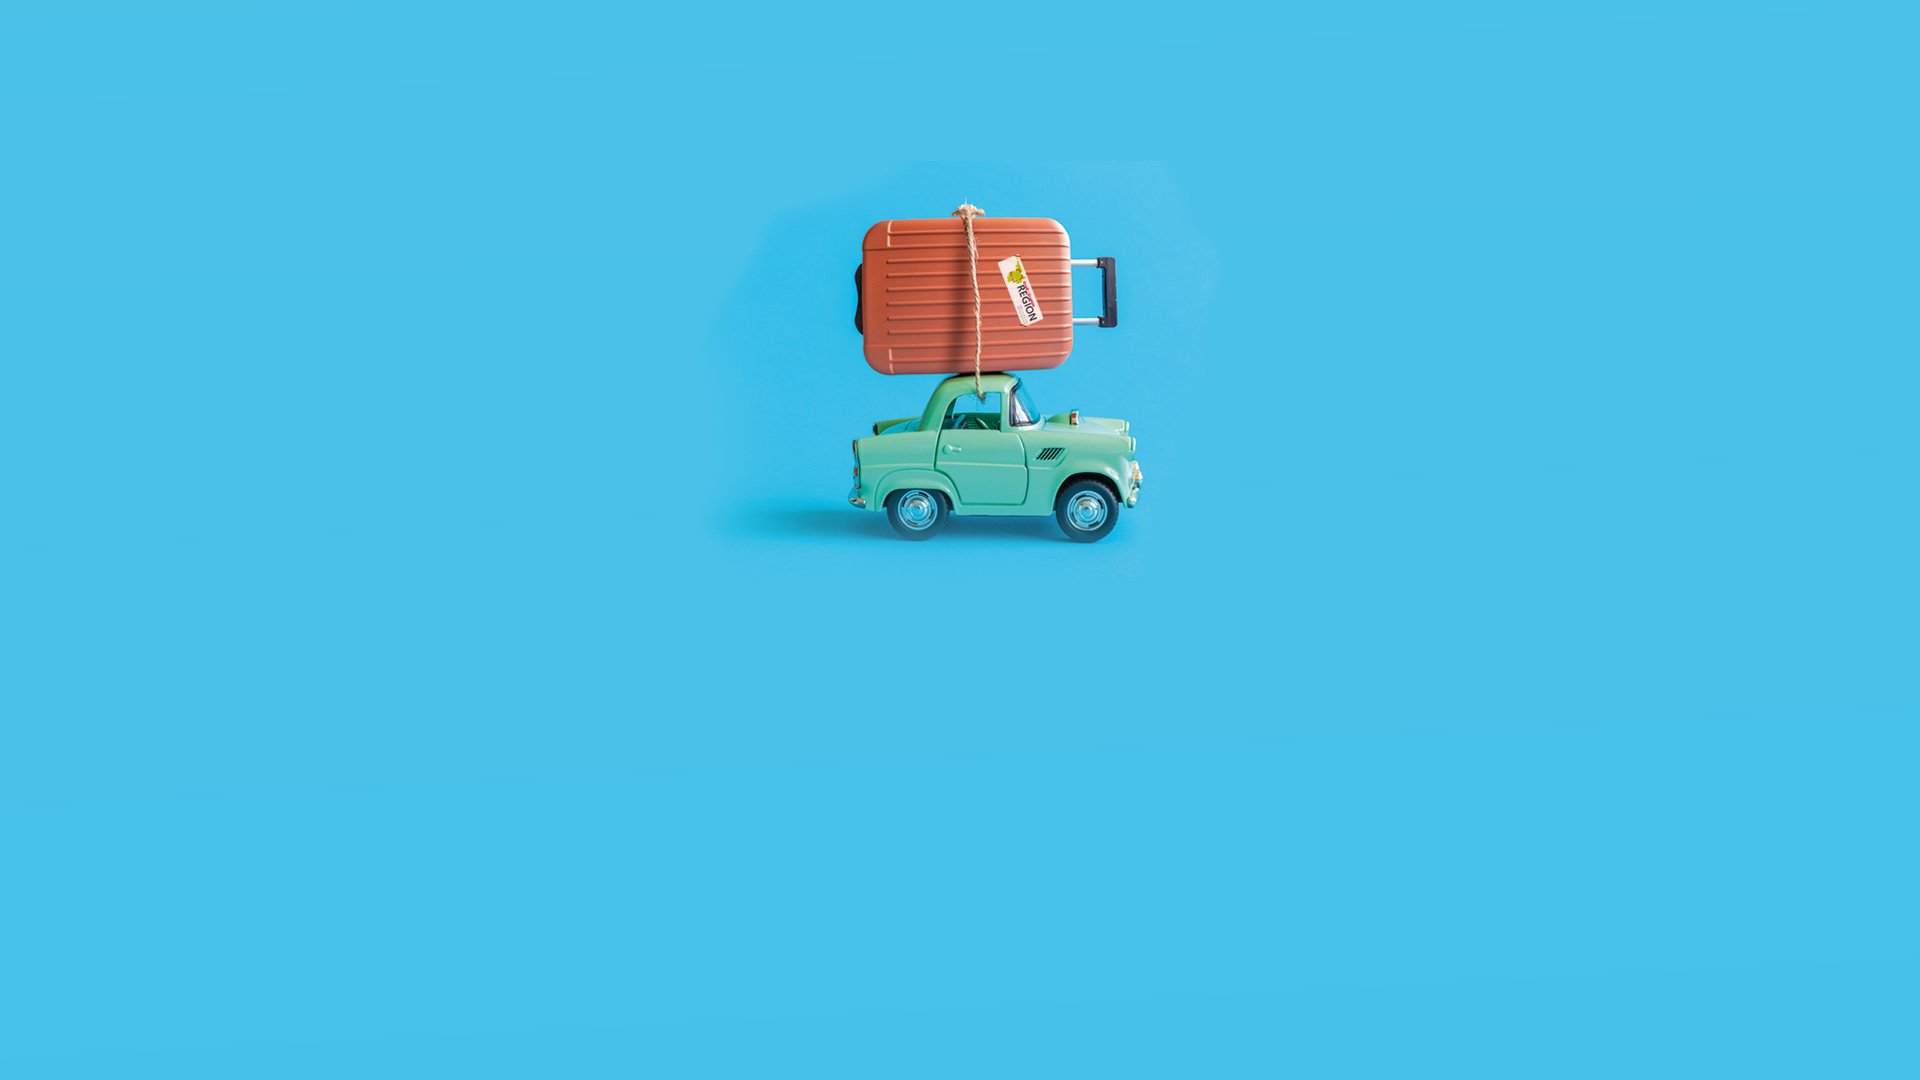 Mitfarbenes Auto mit braunem Koffer samt Großregions-Logo auf dem Koffer vor blauem Hintergrund.